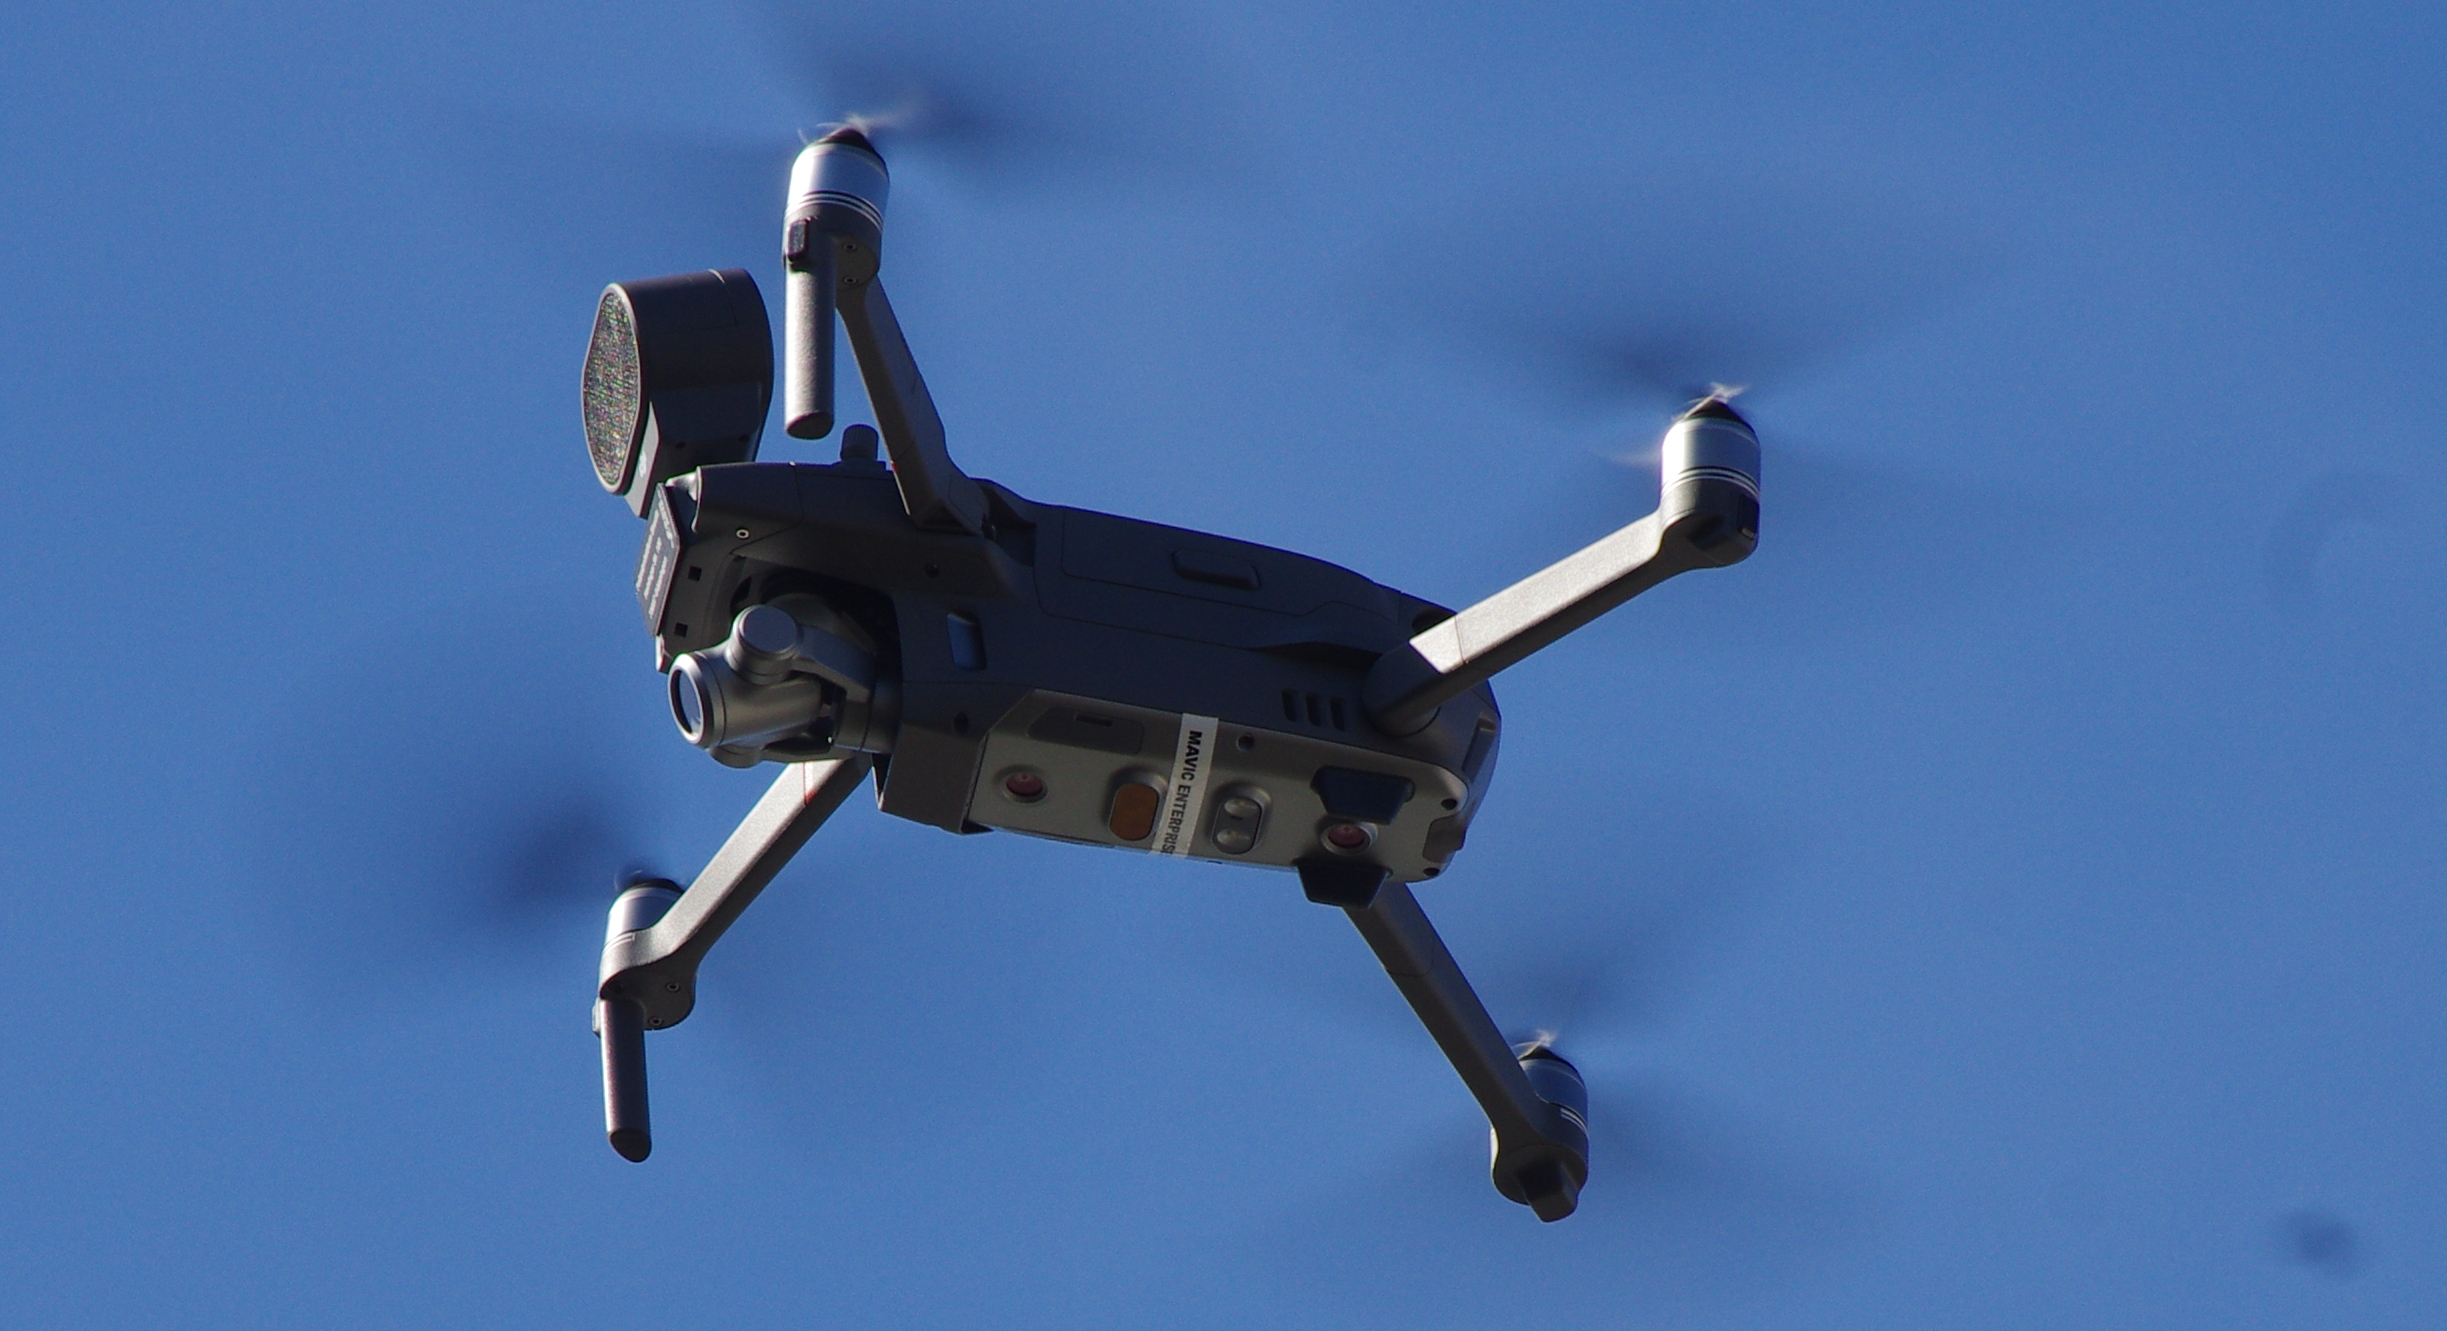 Corona controls: German police use drones